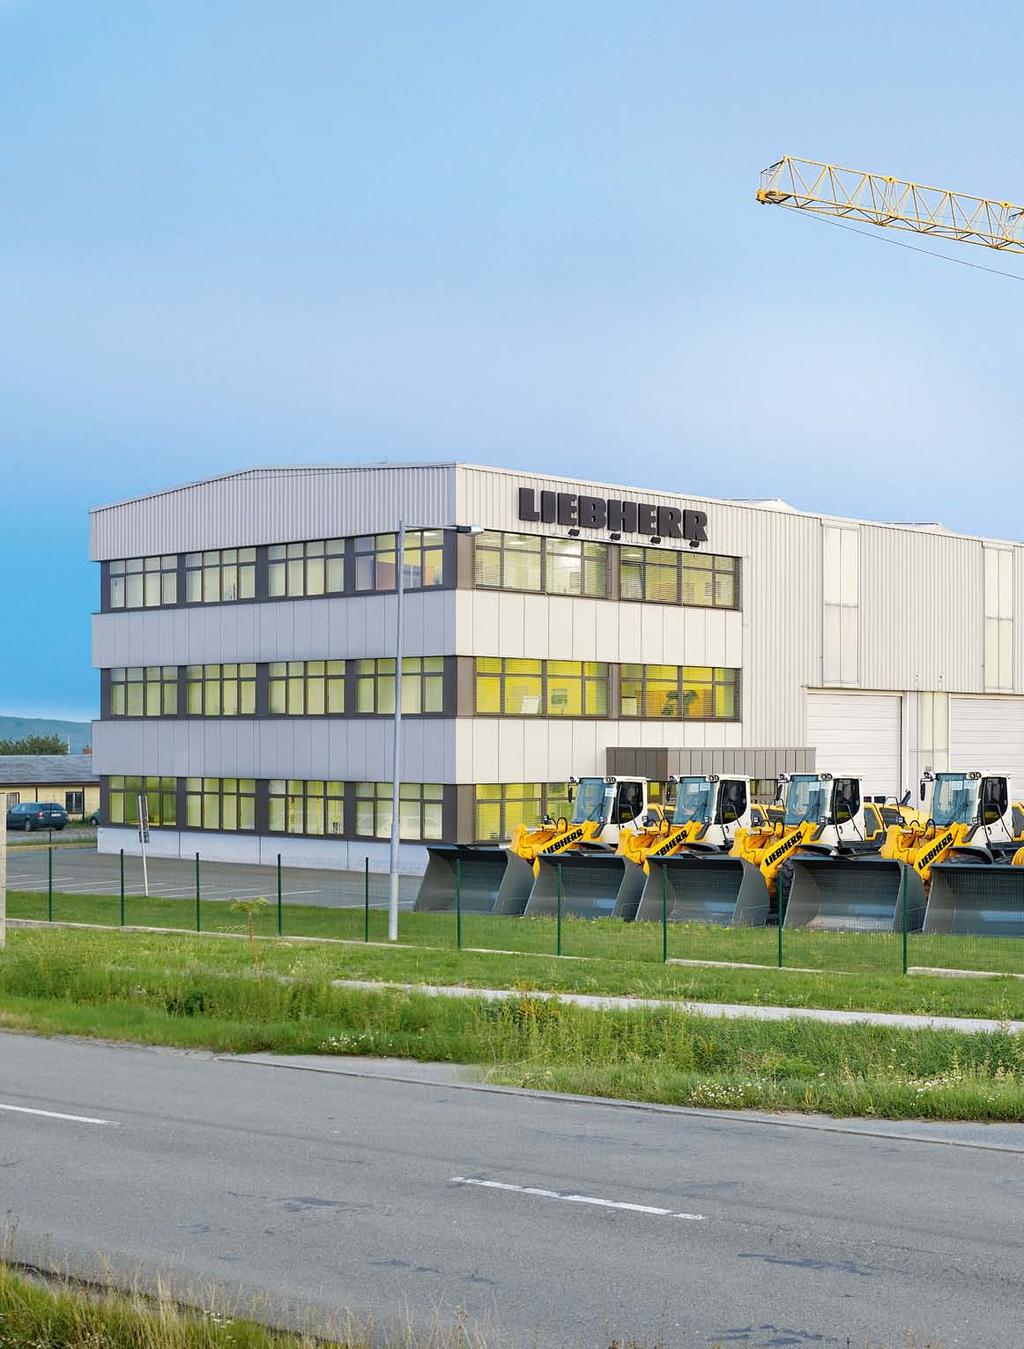 Přímo od výrobce Liebherr prodej a servis v České republice Všude ve světě jsou úspěšně využívány hydraulické bagry, kolové nakladače, buldozery a pásové nakladače, otočné věžové jeřáby, pojízdné